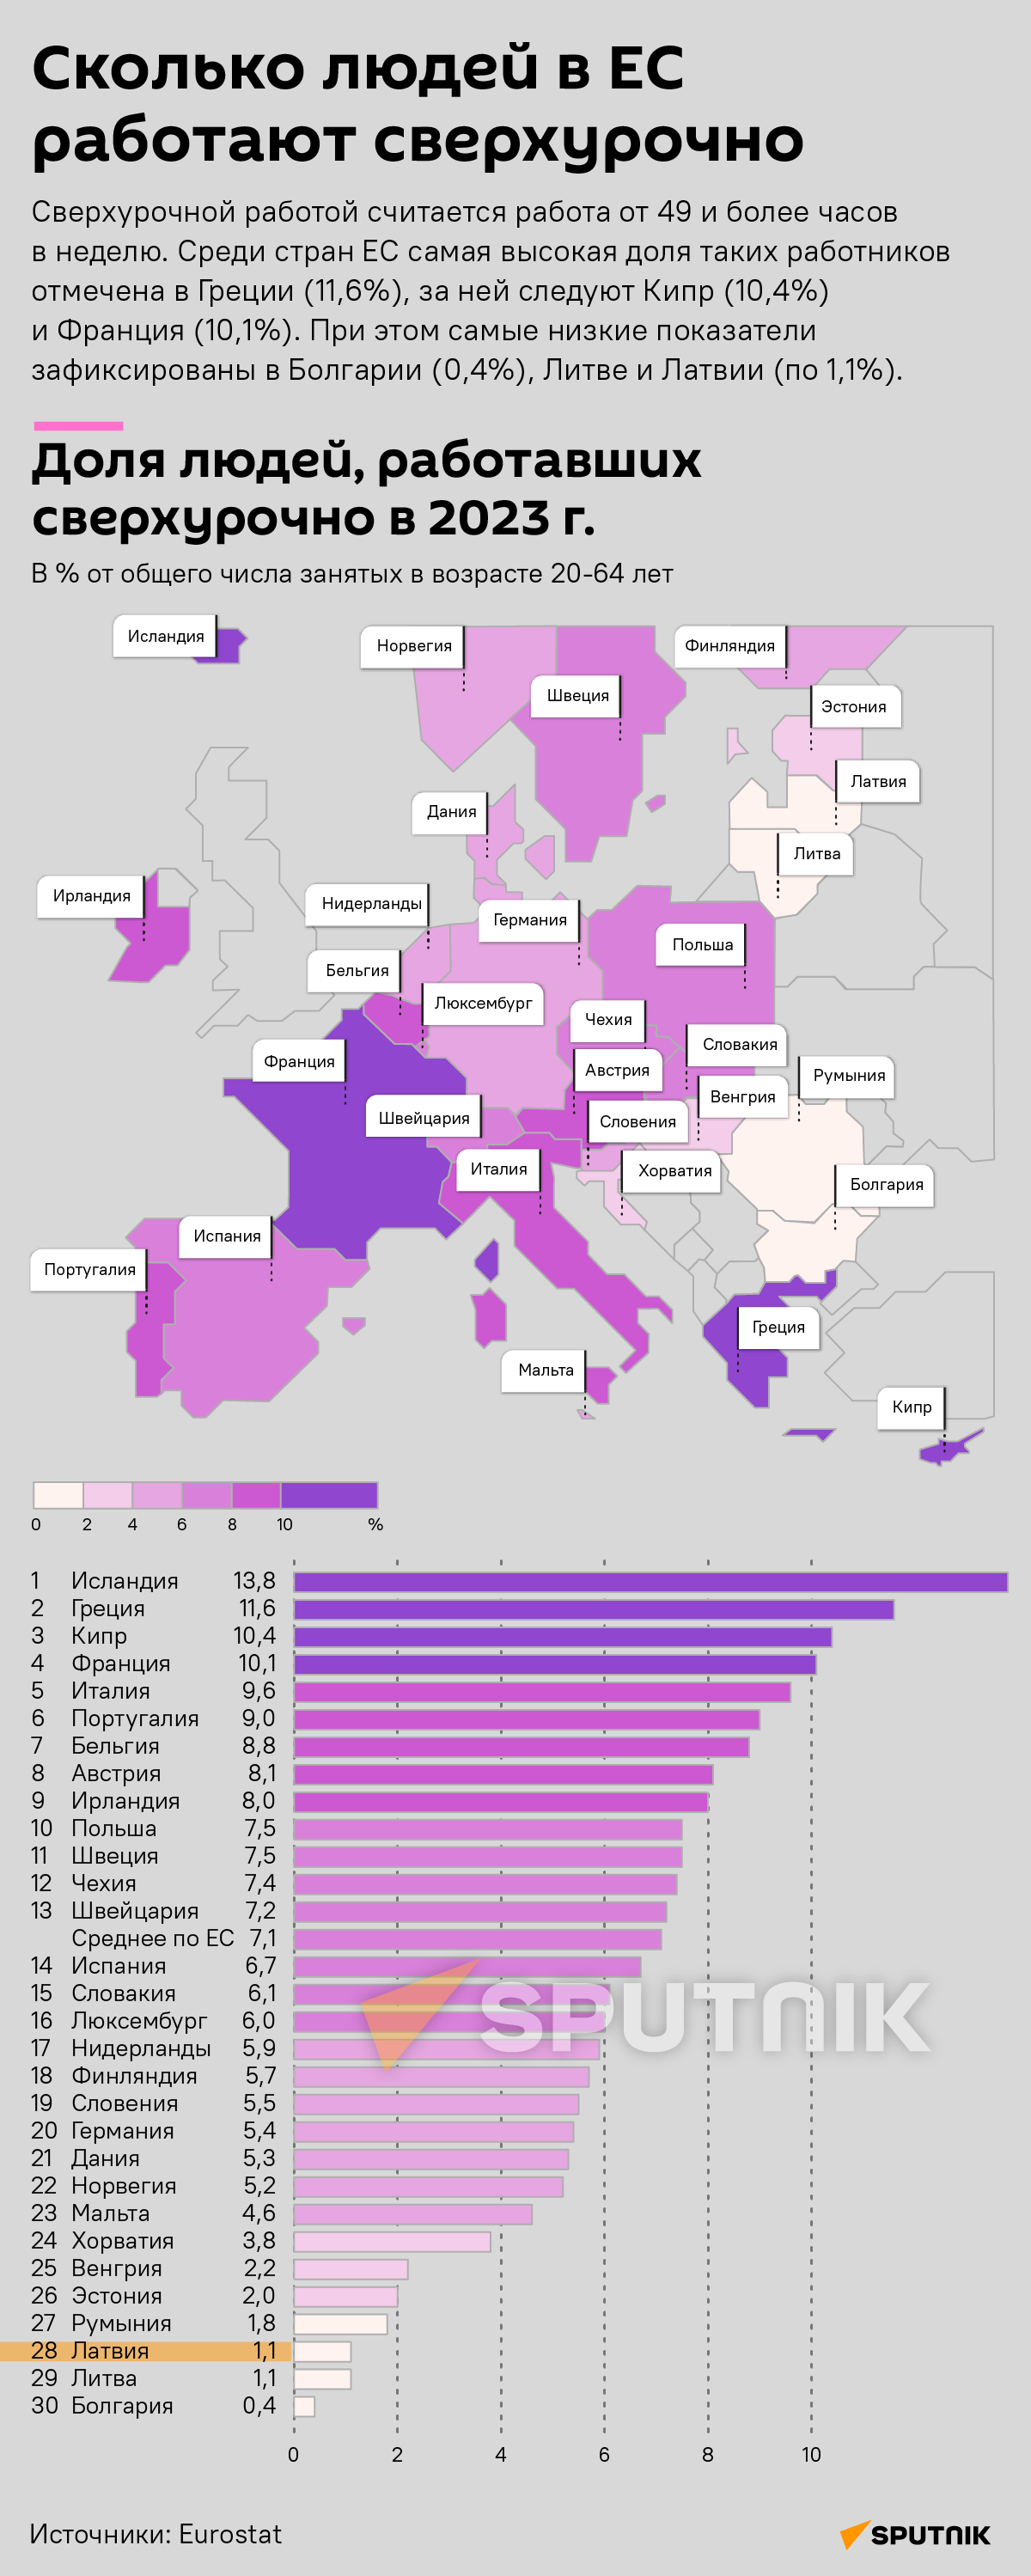 Сколько людей в ЕС работали сверхурочно в 2023 году  - Sputnik Латвия